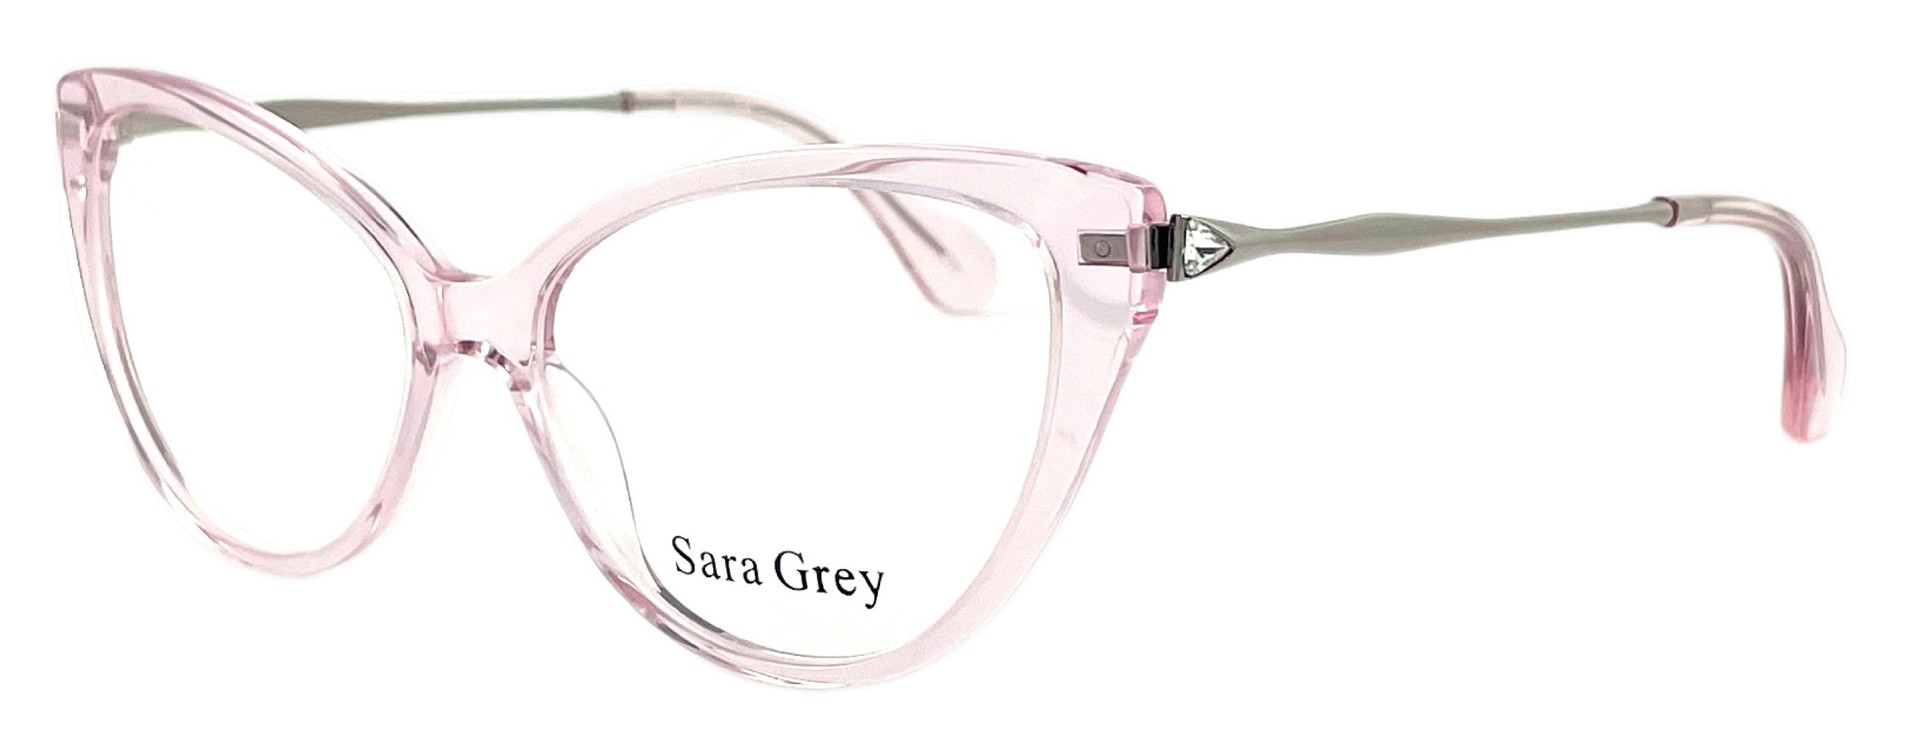 Sara Grey 1650 C02 2